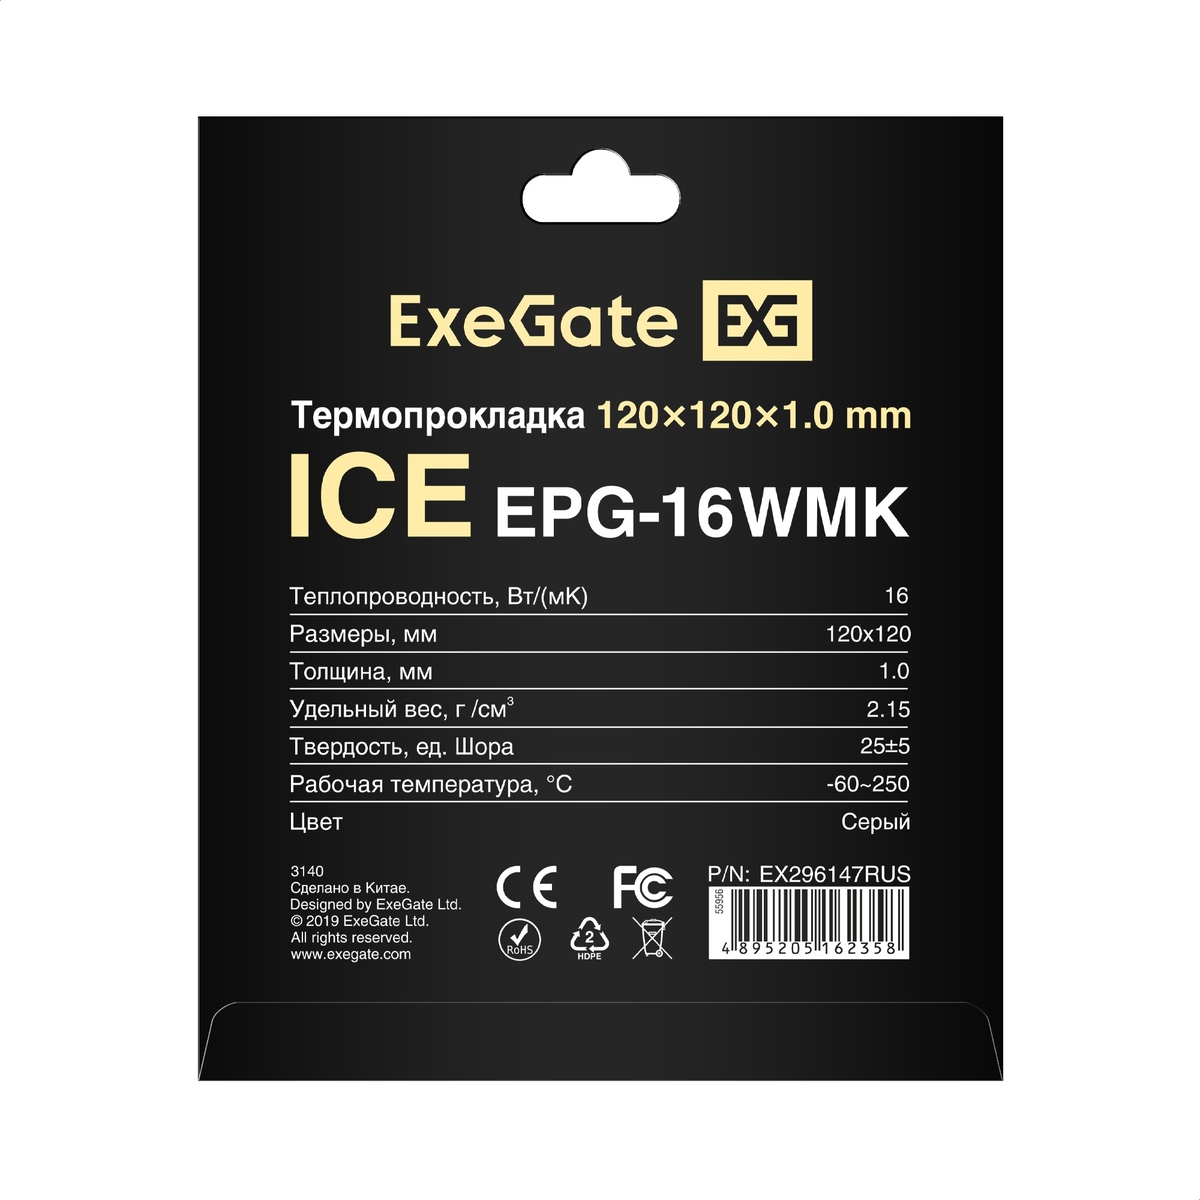 Thermal Pad ExeGate Ice EPG-16WMK 120x120x1.0